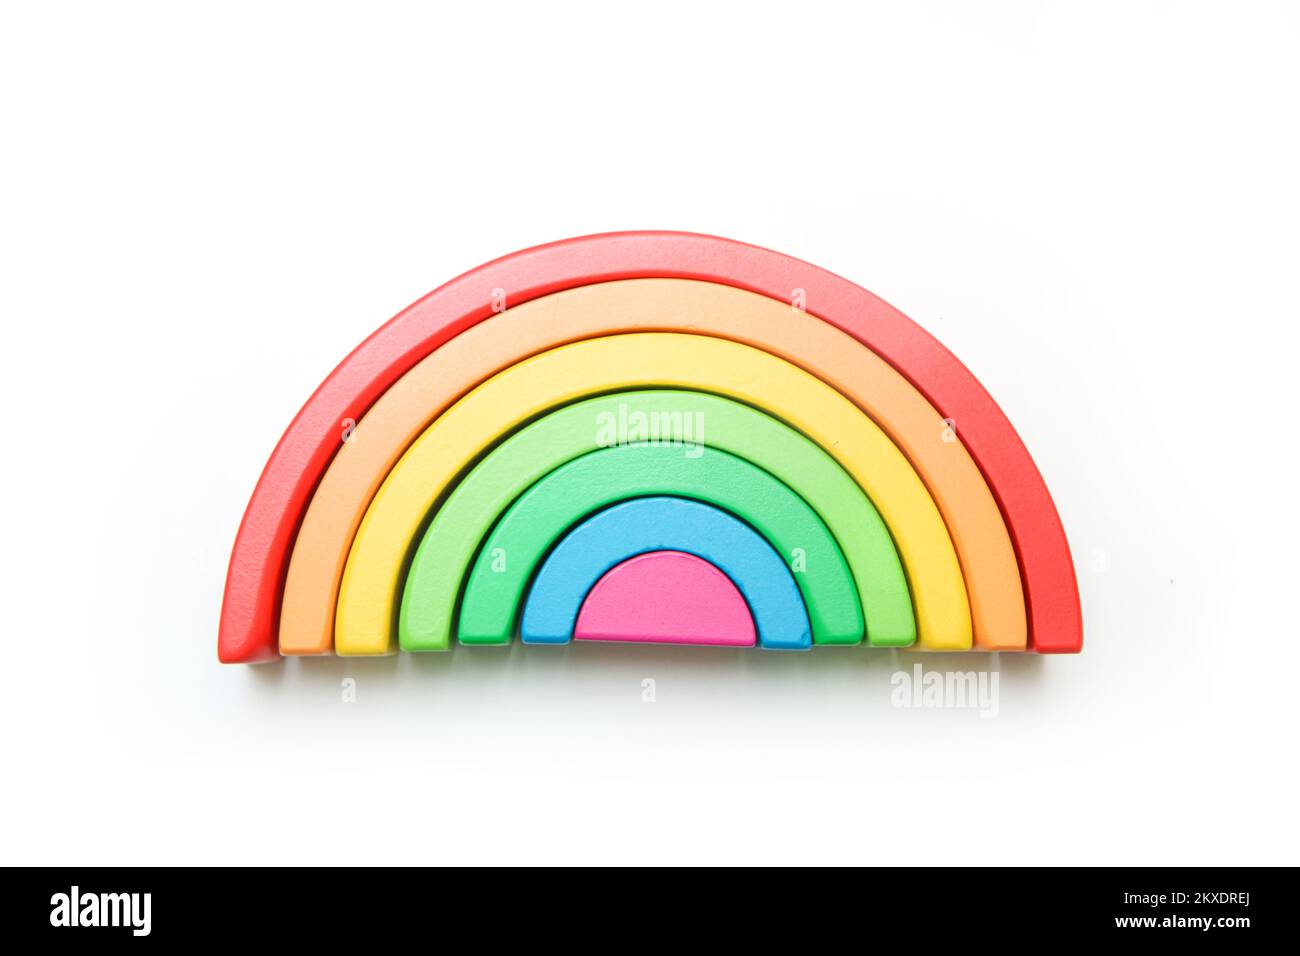 Das Holz-Regenbogenspielzeug für Kinder isoliert auf weißem Hintergrund. Stockfoto